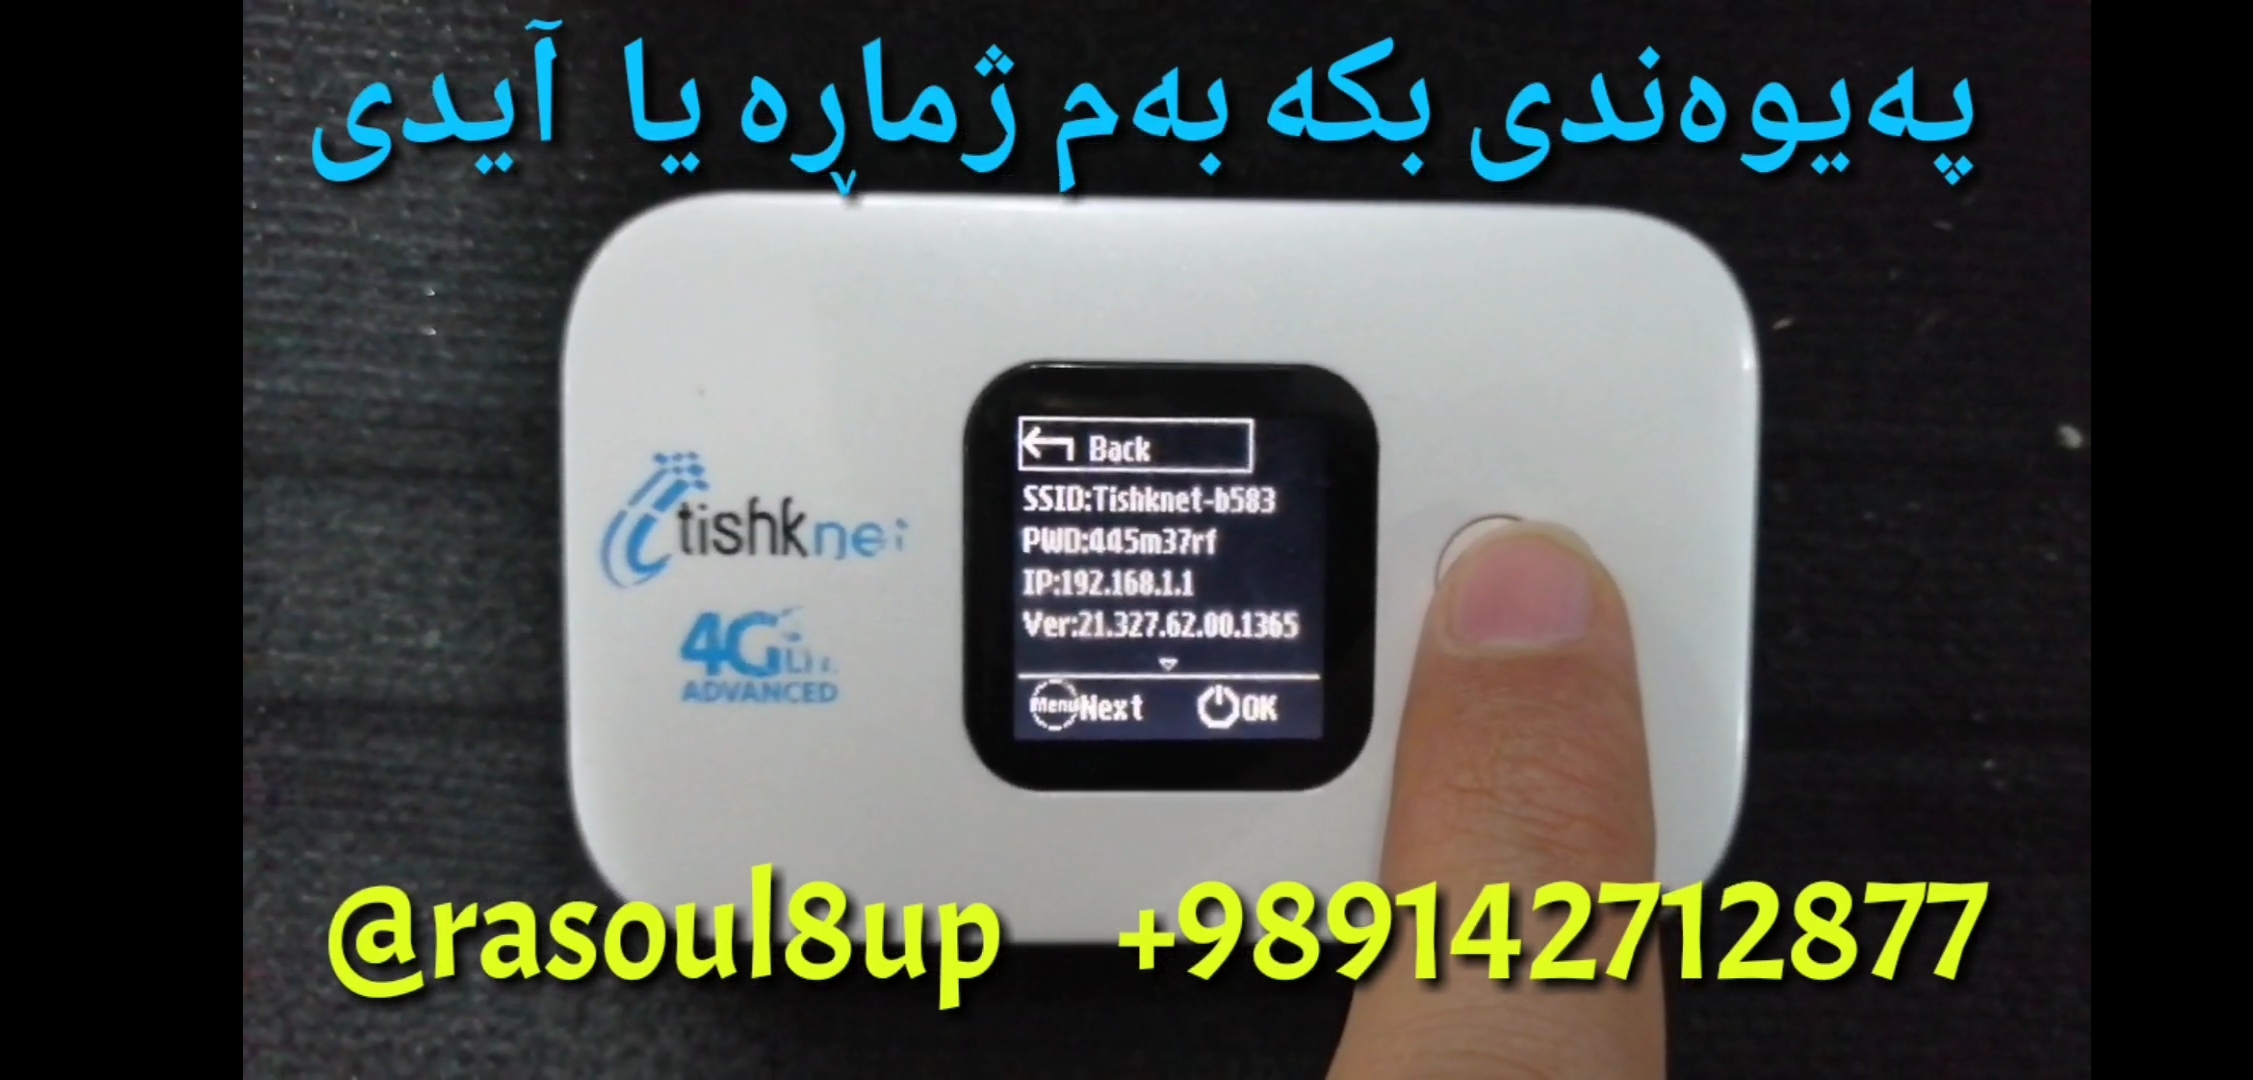 unlock modem tishknet e5577s 932 v 21.327.62.00.1365